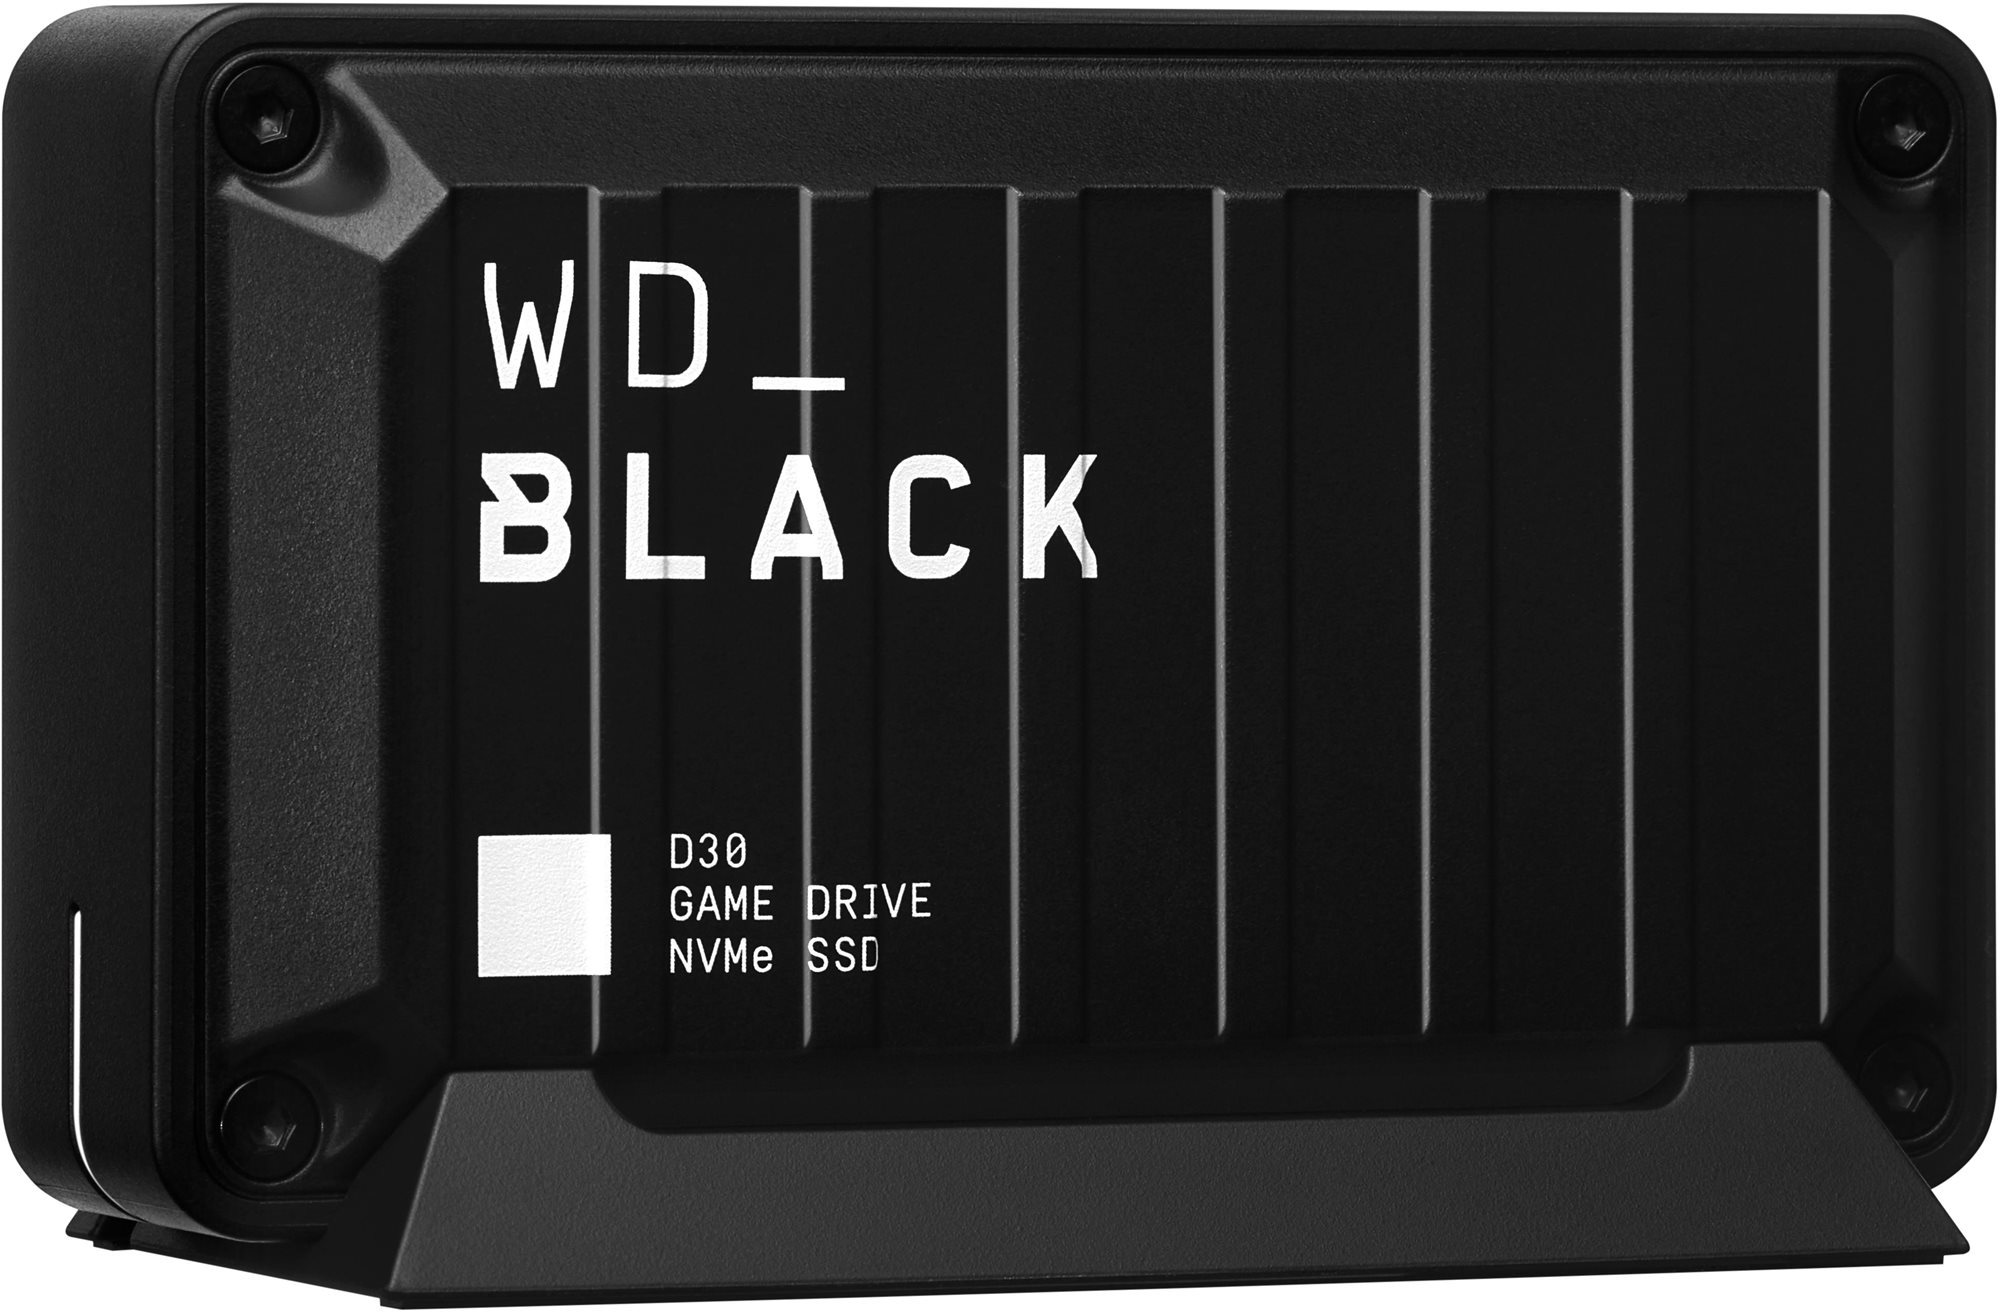 Külső merevlemez WD BLACK D30 1TB